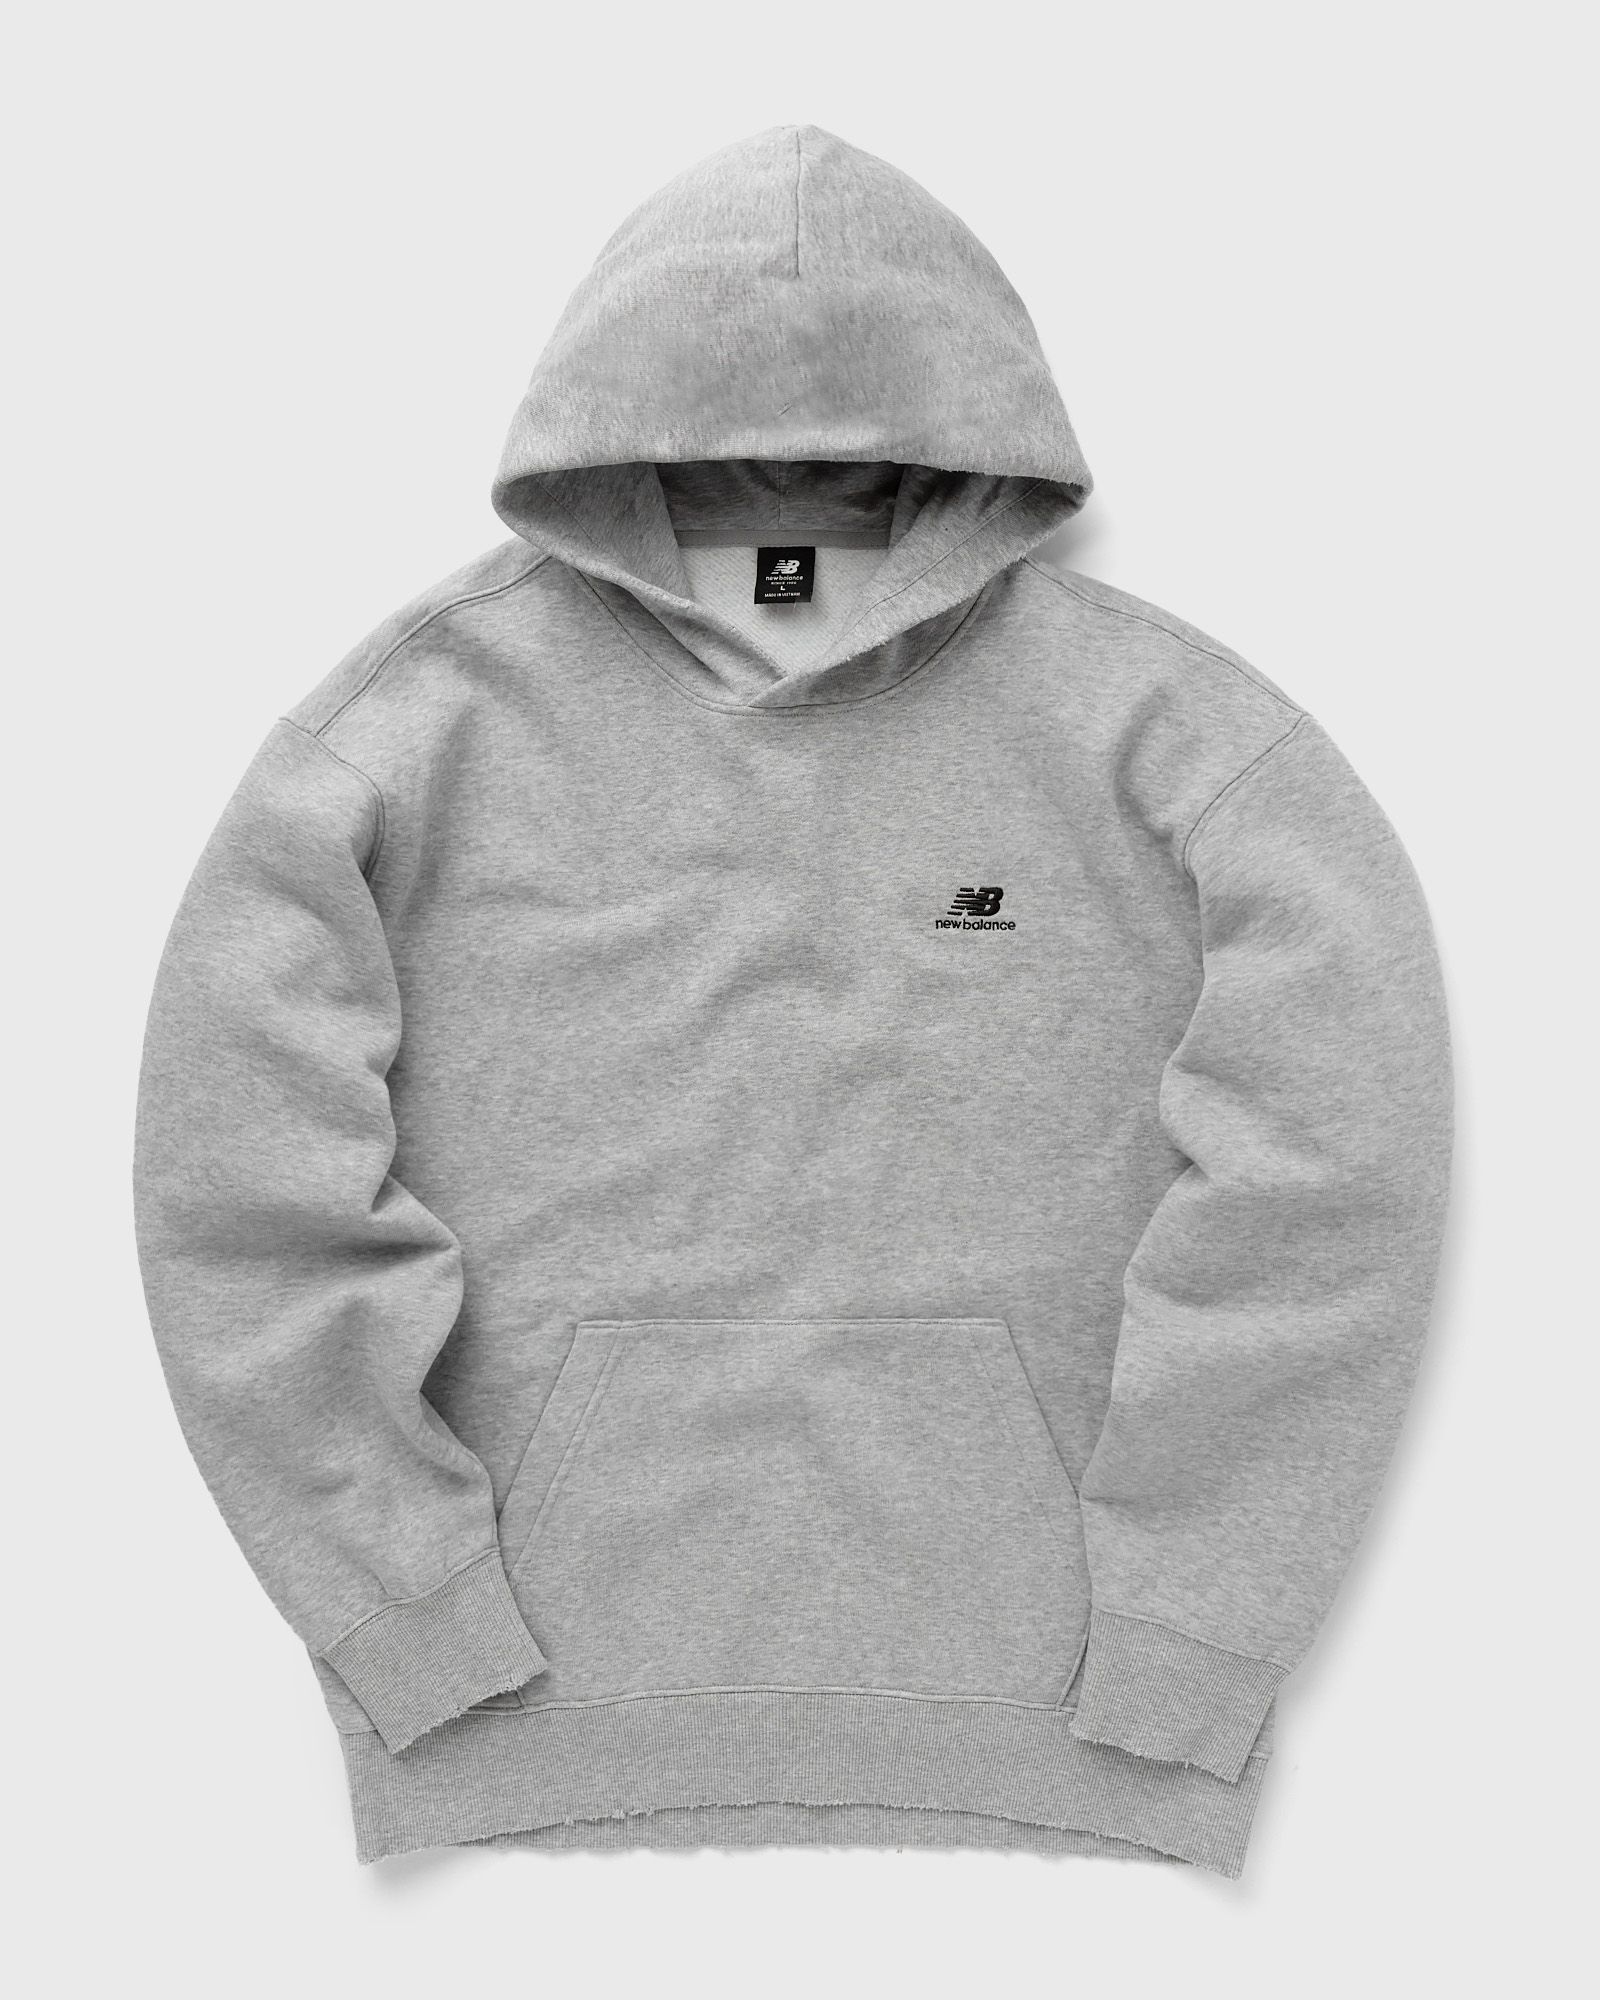 New Balance - hoops fleece hoodie men hoodies grey in größe:m